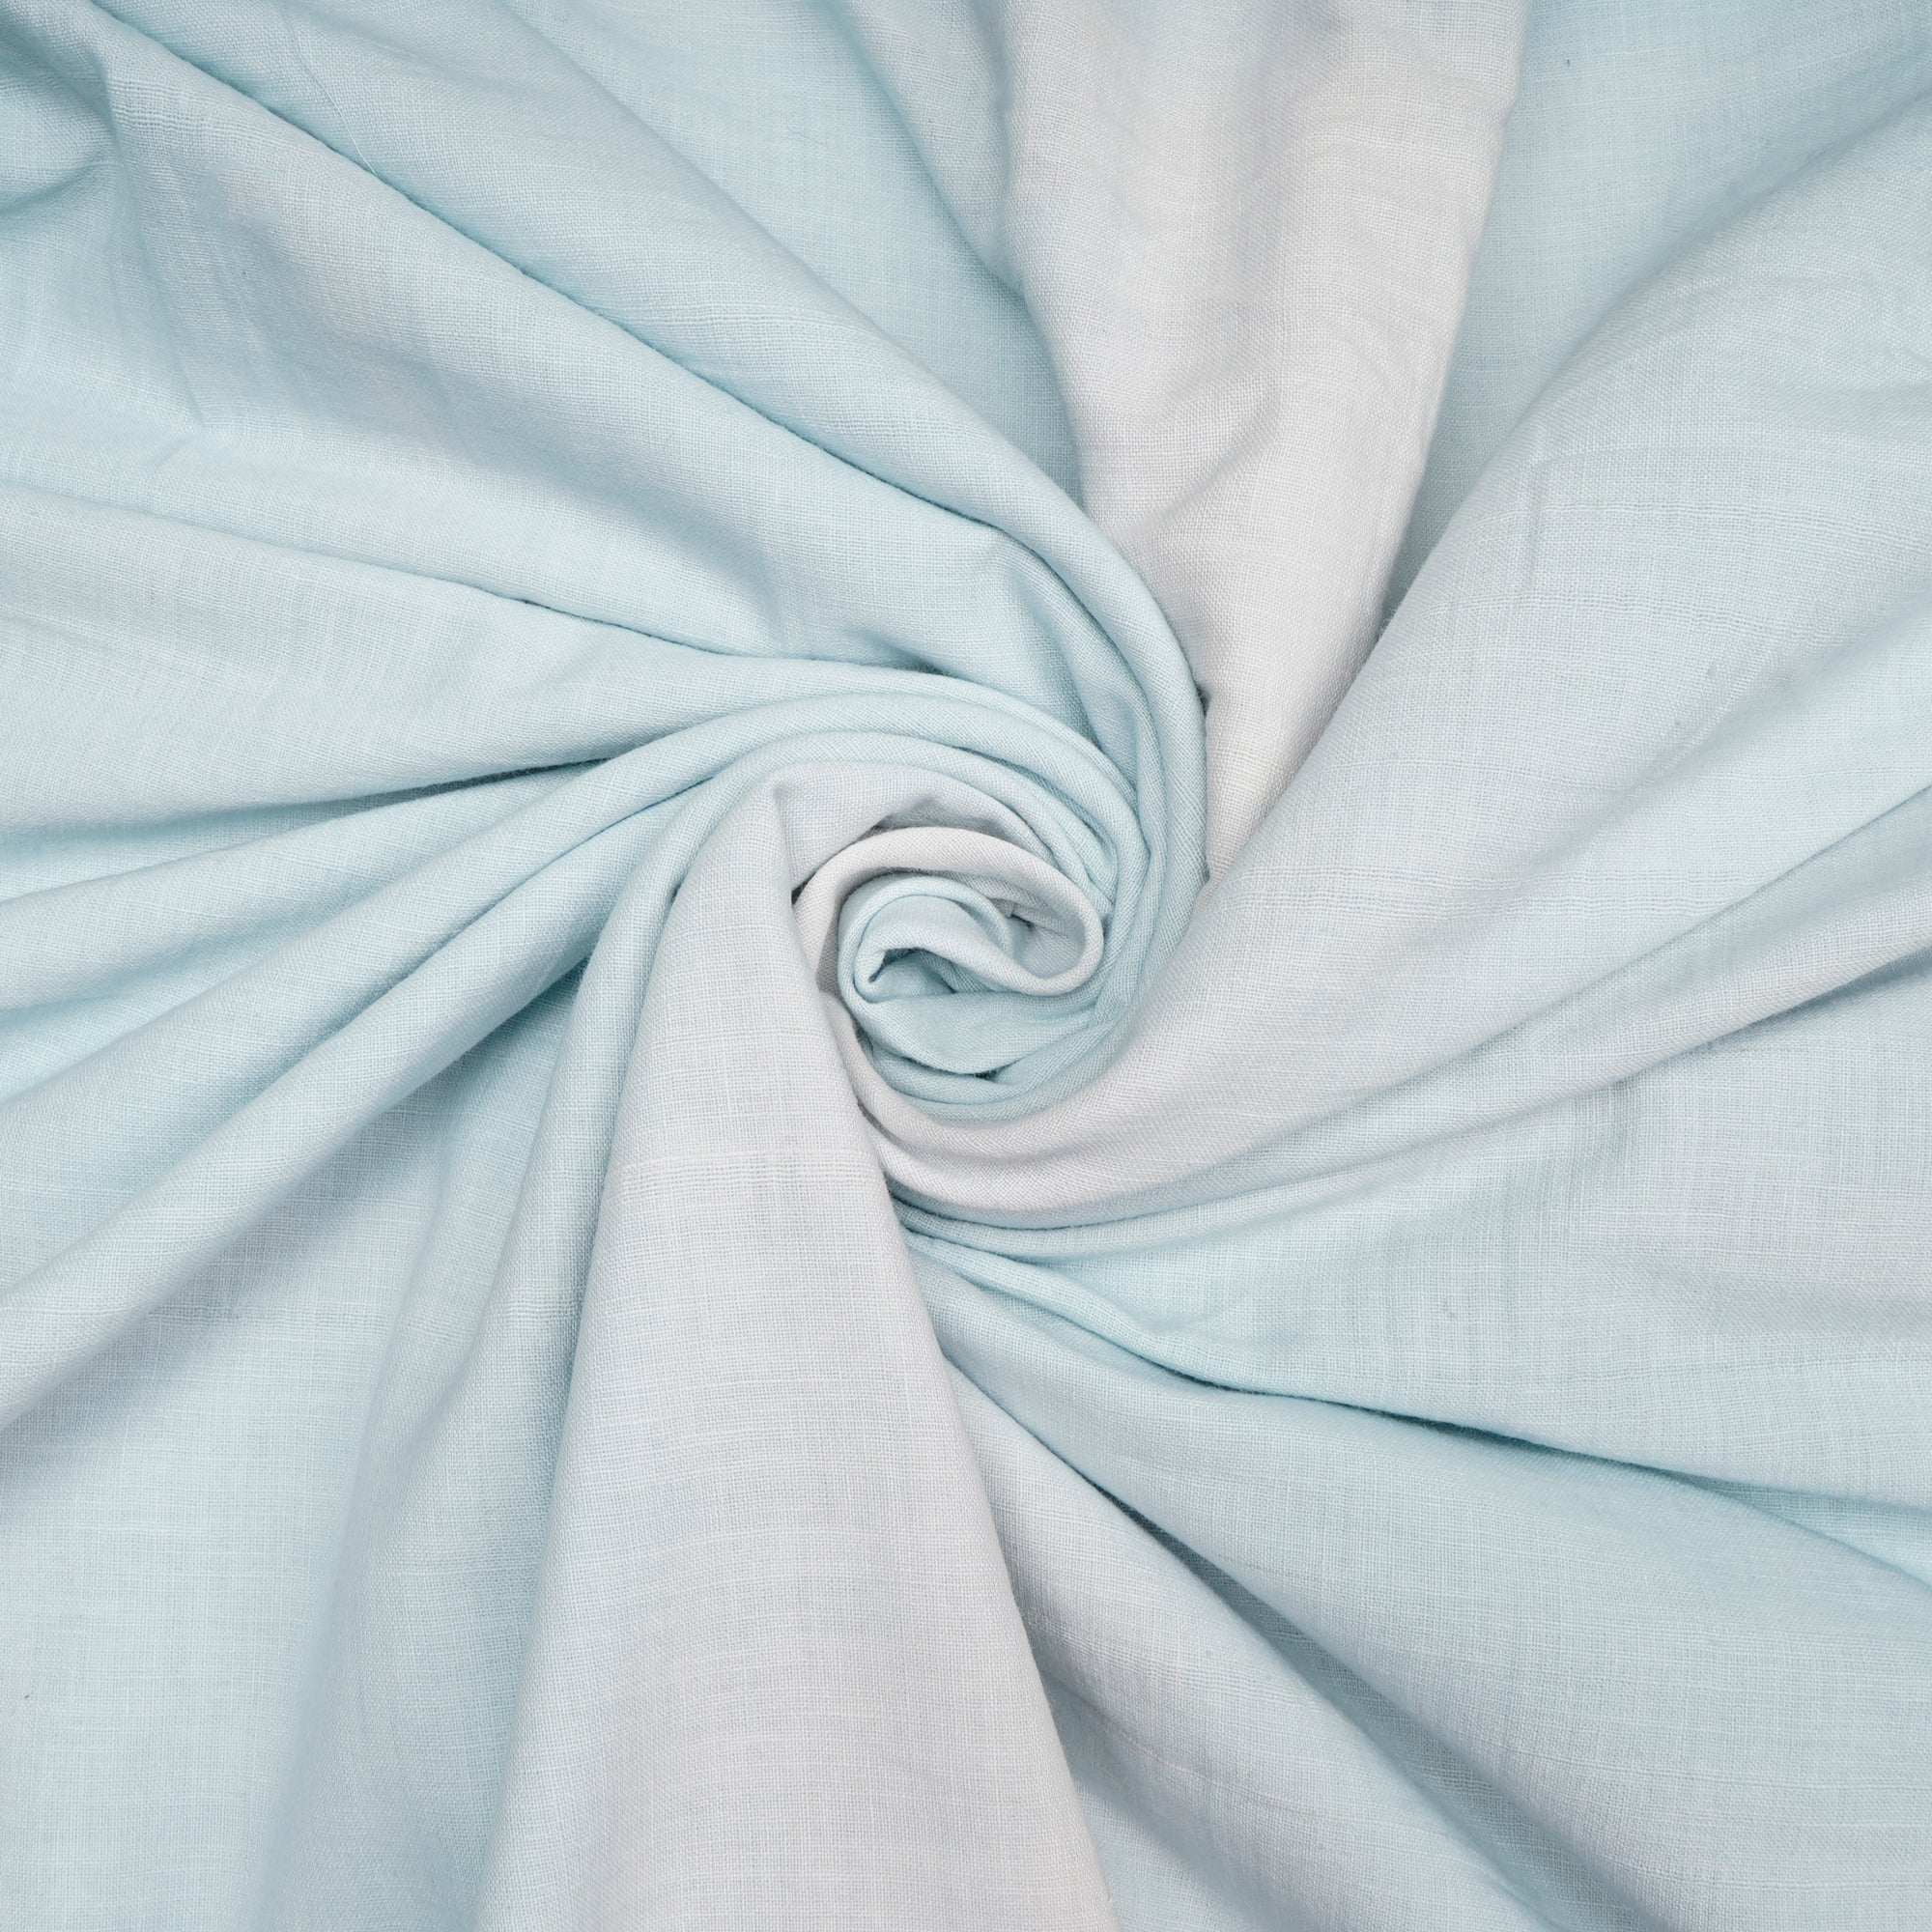 Ice Blue Plain Handspun Handwoven Muslin Cotton Fabric